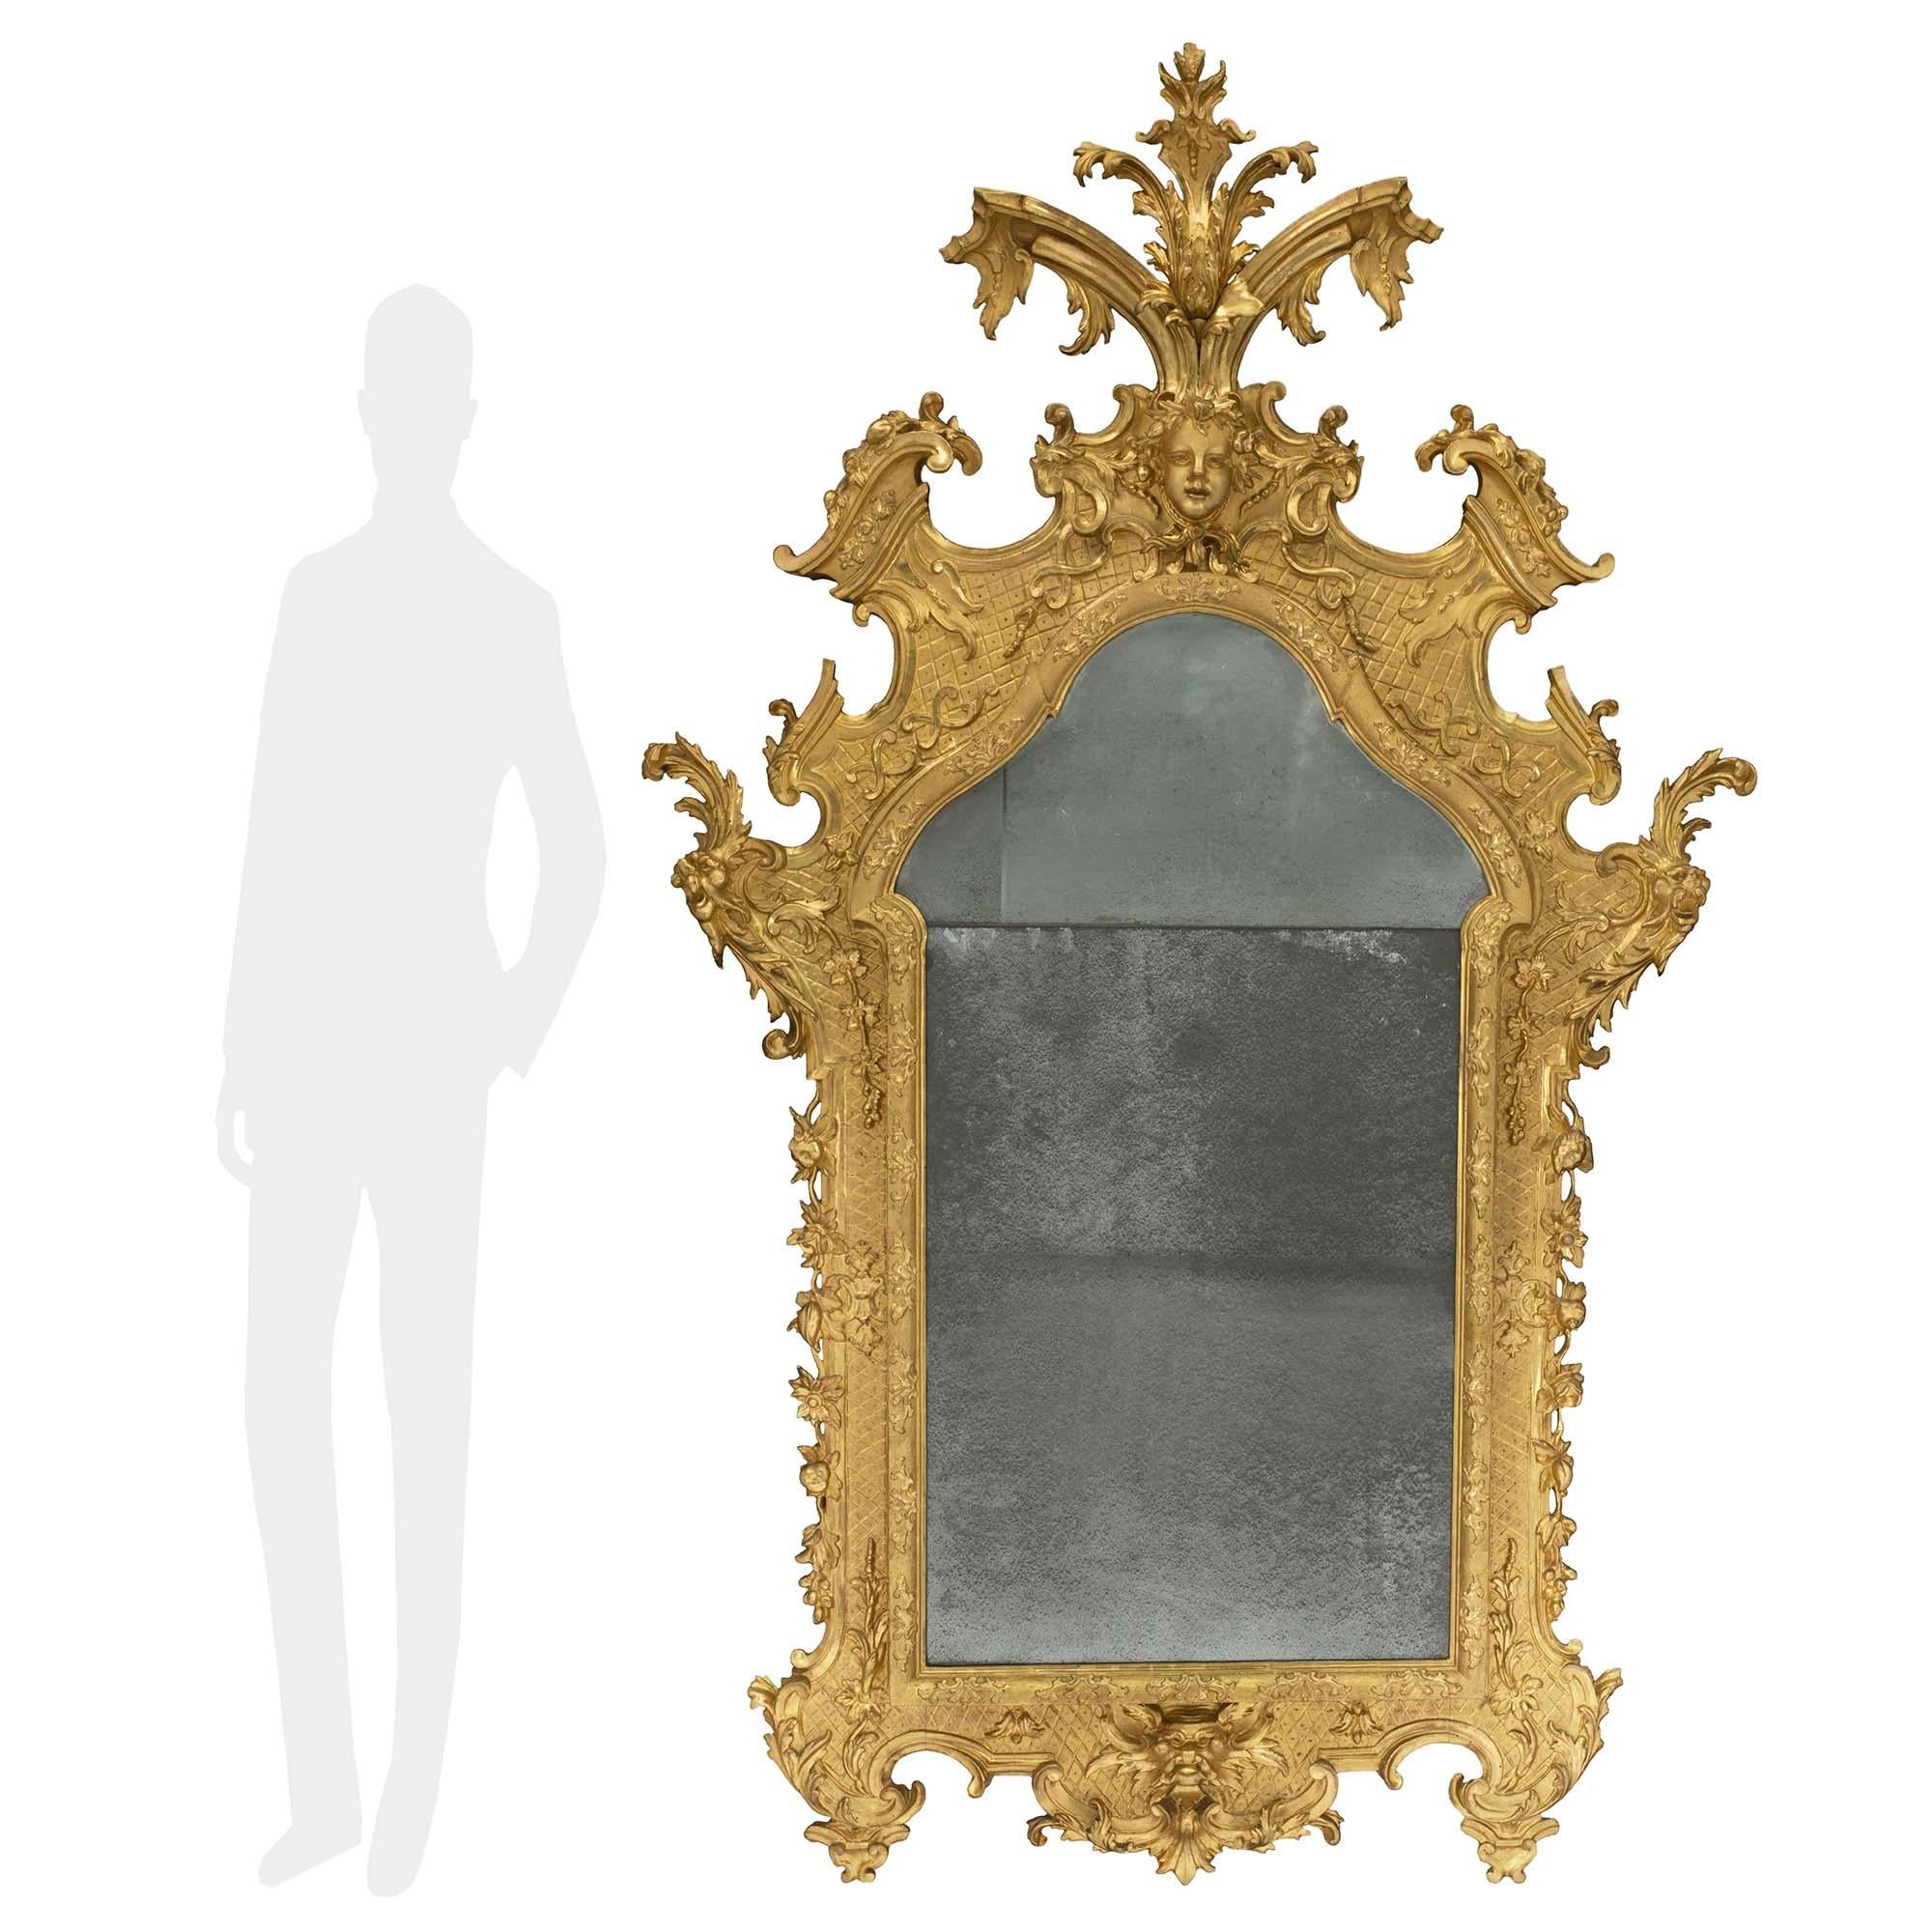 Superbe miroir en bois doré de grande taille, de style baroque italien du XVIIIe siècle. Les plaques de miroir d'origine sont encadrées d'une bordure mouchetée, feuillagée et martelée. À la base, les pieds feuillus sont ornés de riches motifs à